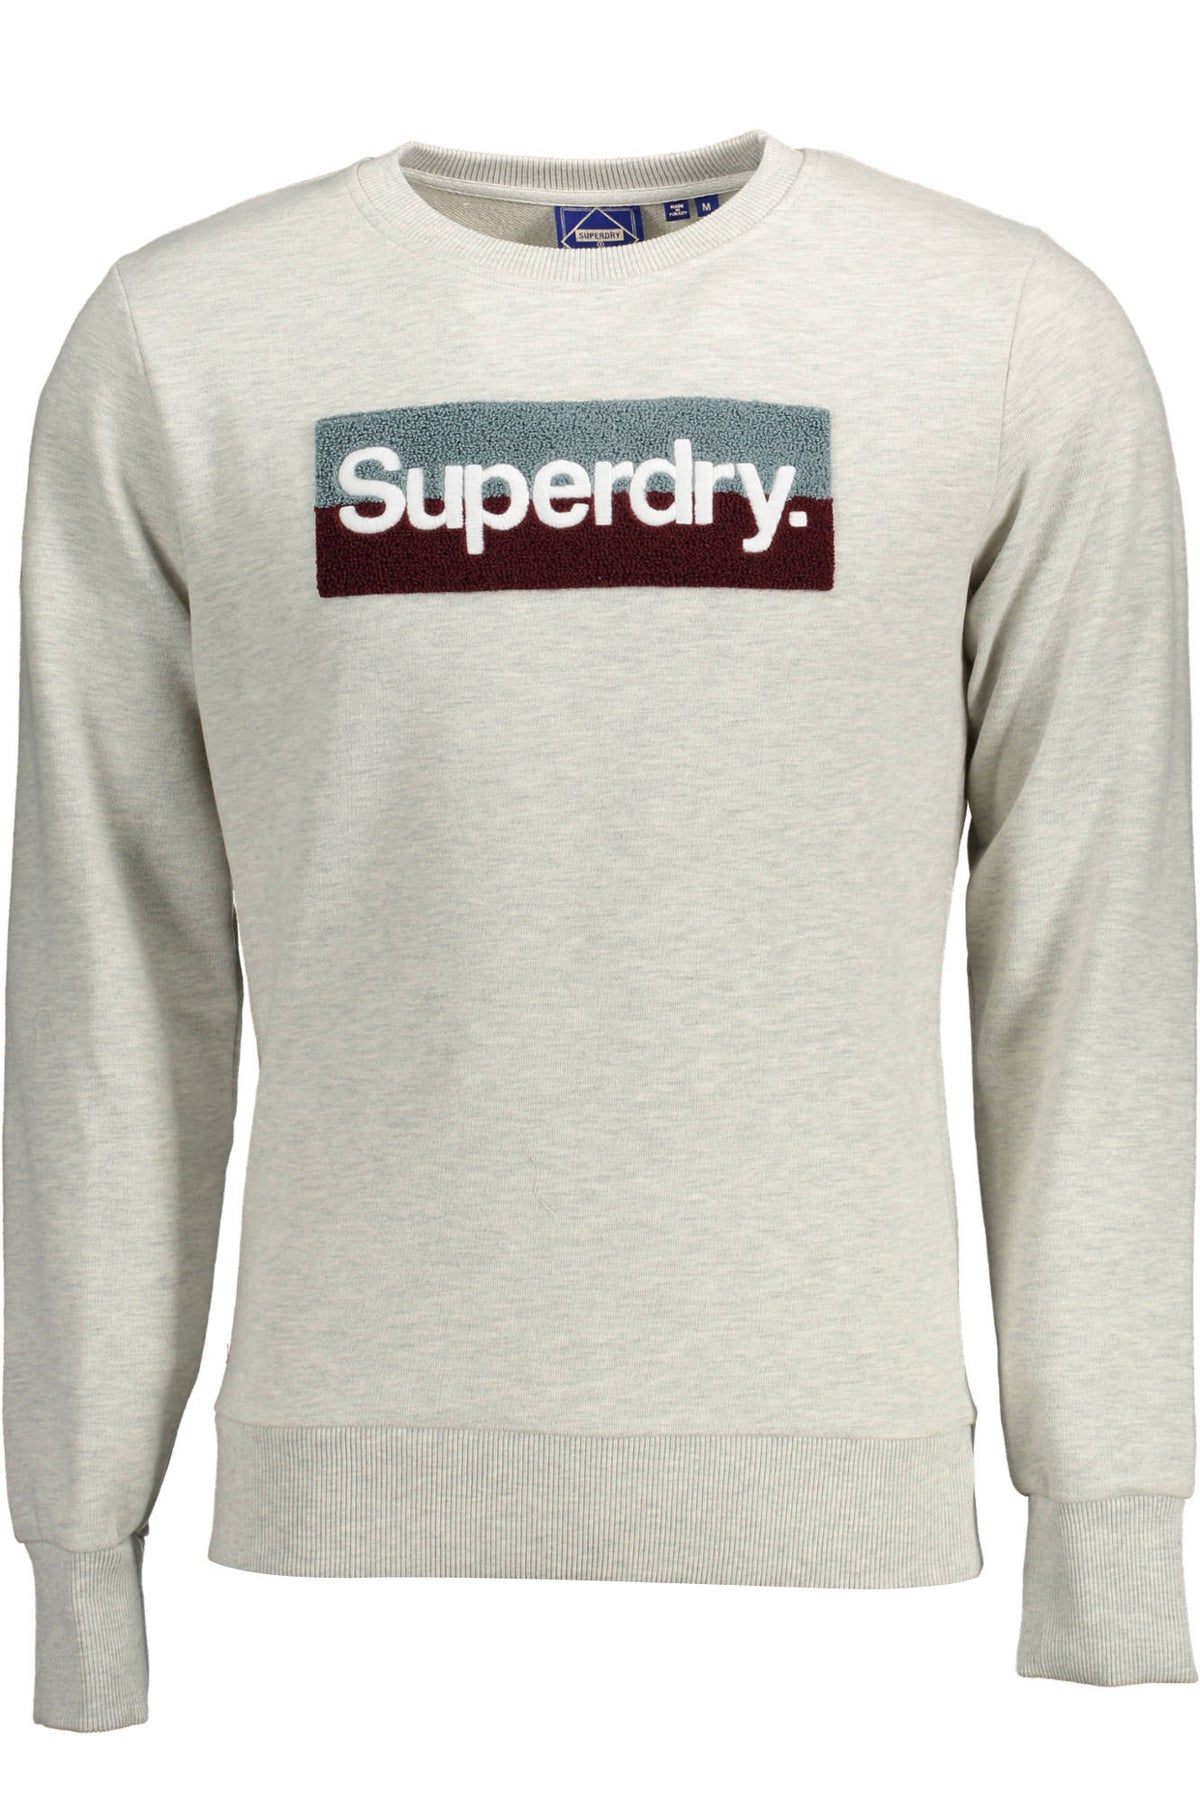 SUPERDRY Herren Pullover Sweatshirt Shirt Oberteil mit Rundhalsausschnitt, langärmlig